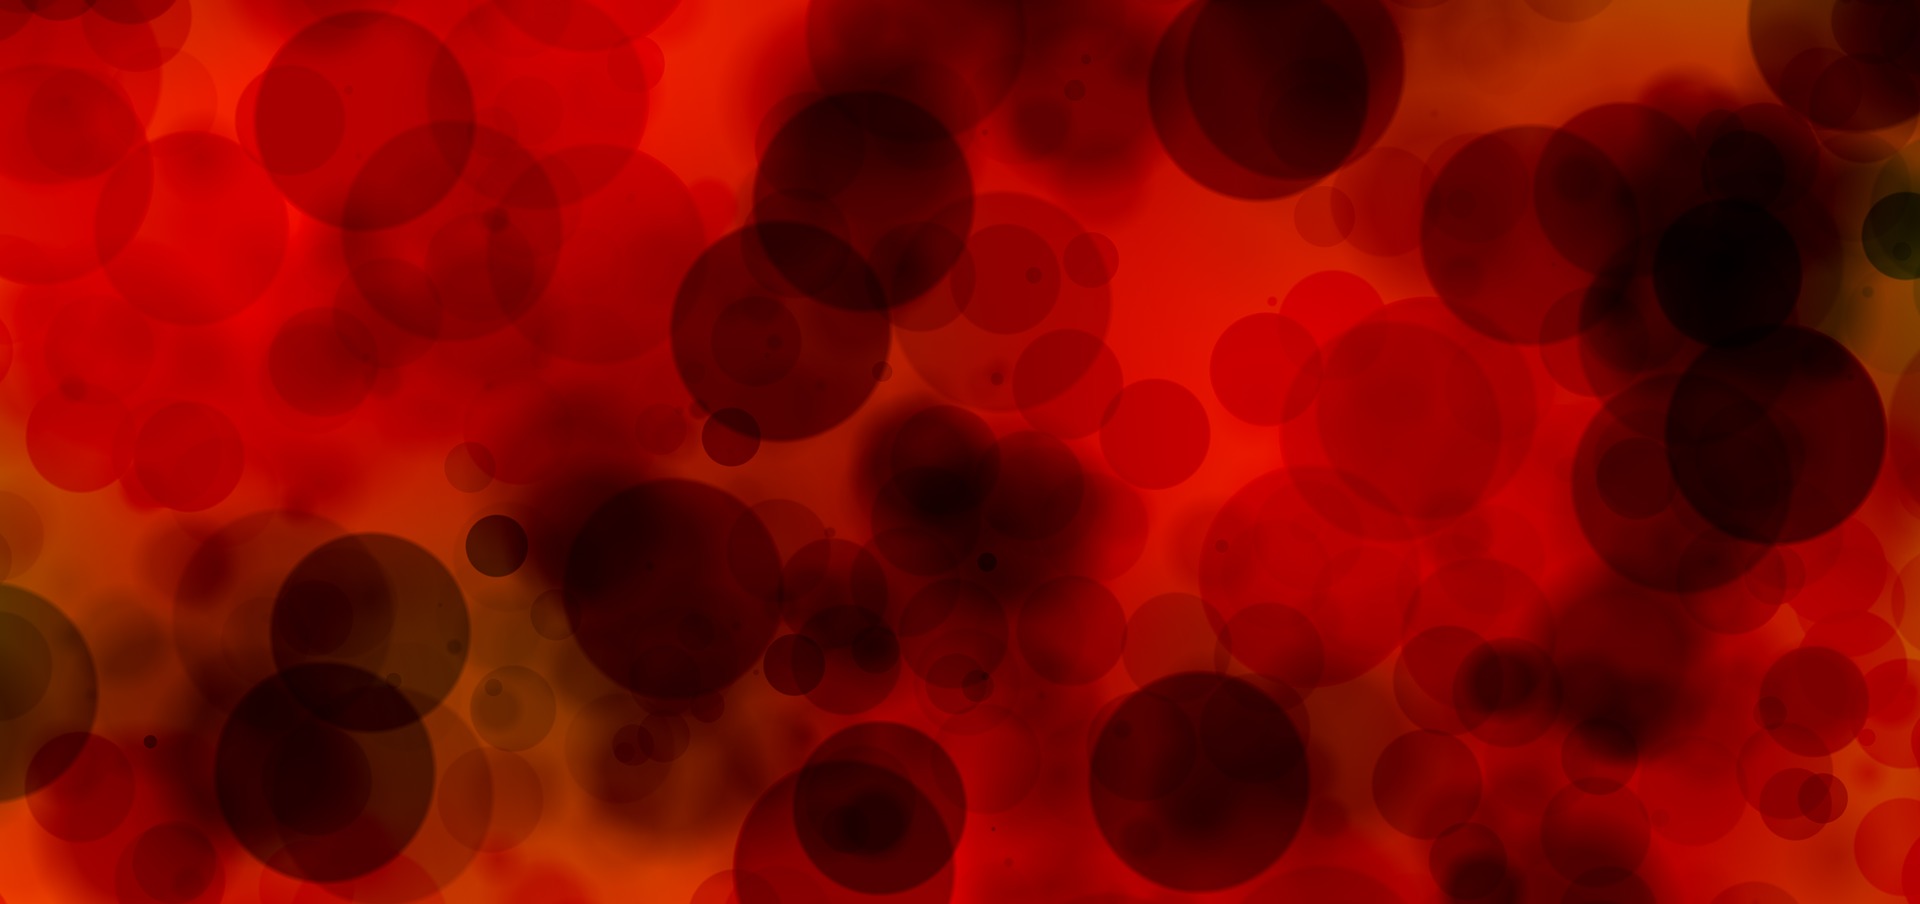 Les différents types de cellules sanguines